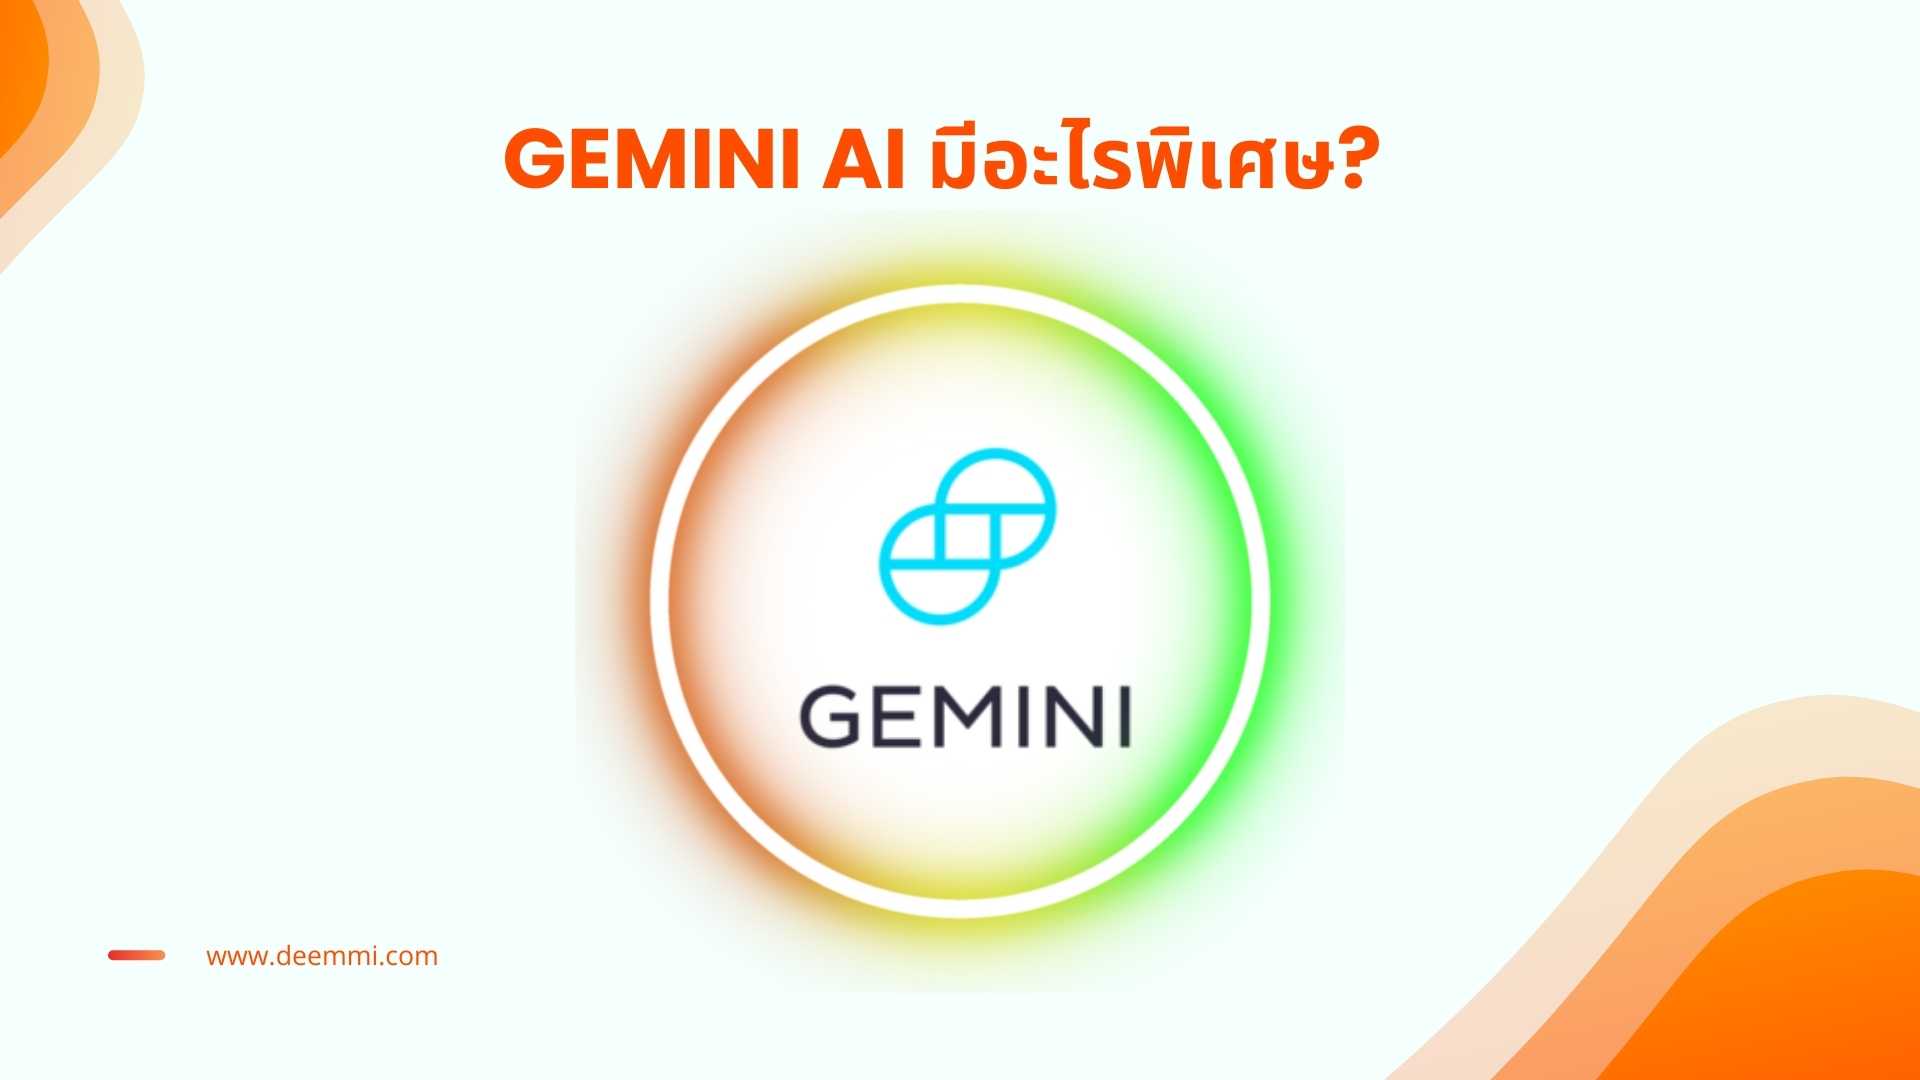 Gemini AI ผู้ช่วยวิเคราะห์ข้อมูลและเข้าใจลูกค้าได้อย่างลึกซึ้ง_Gemini-Generative-AI_assistance